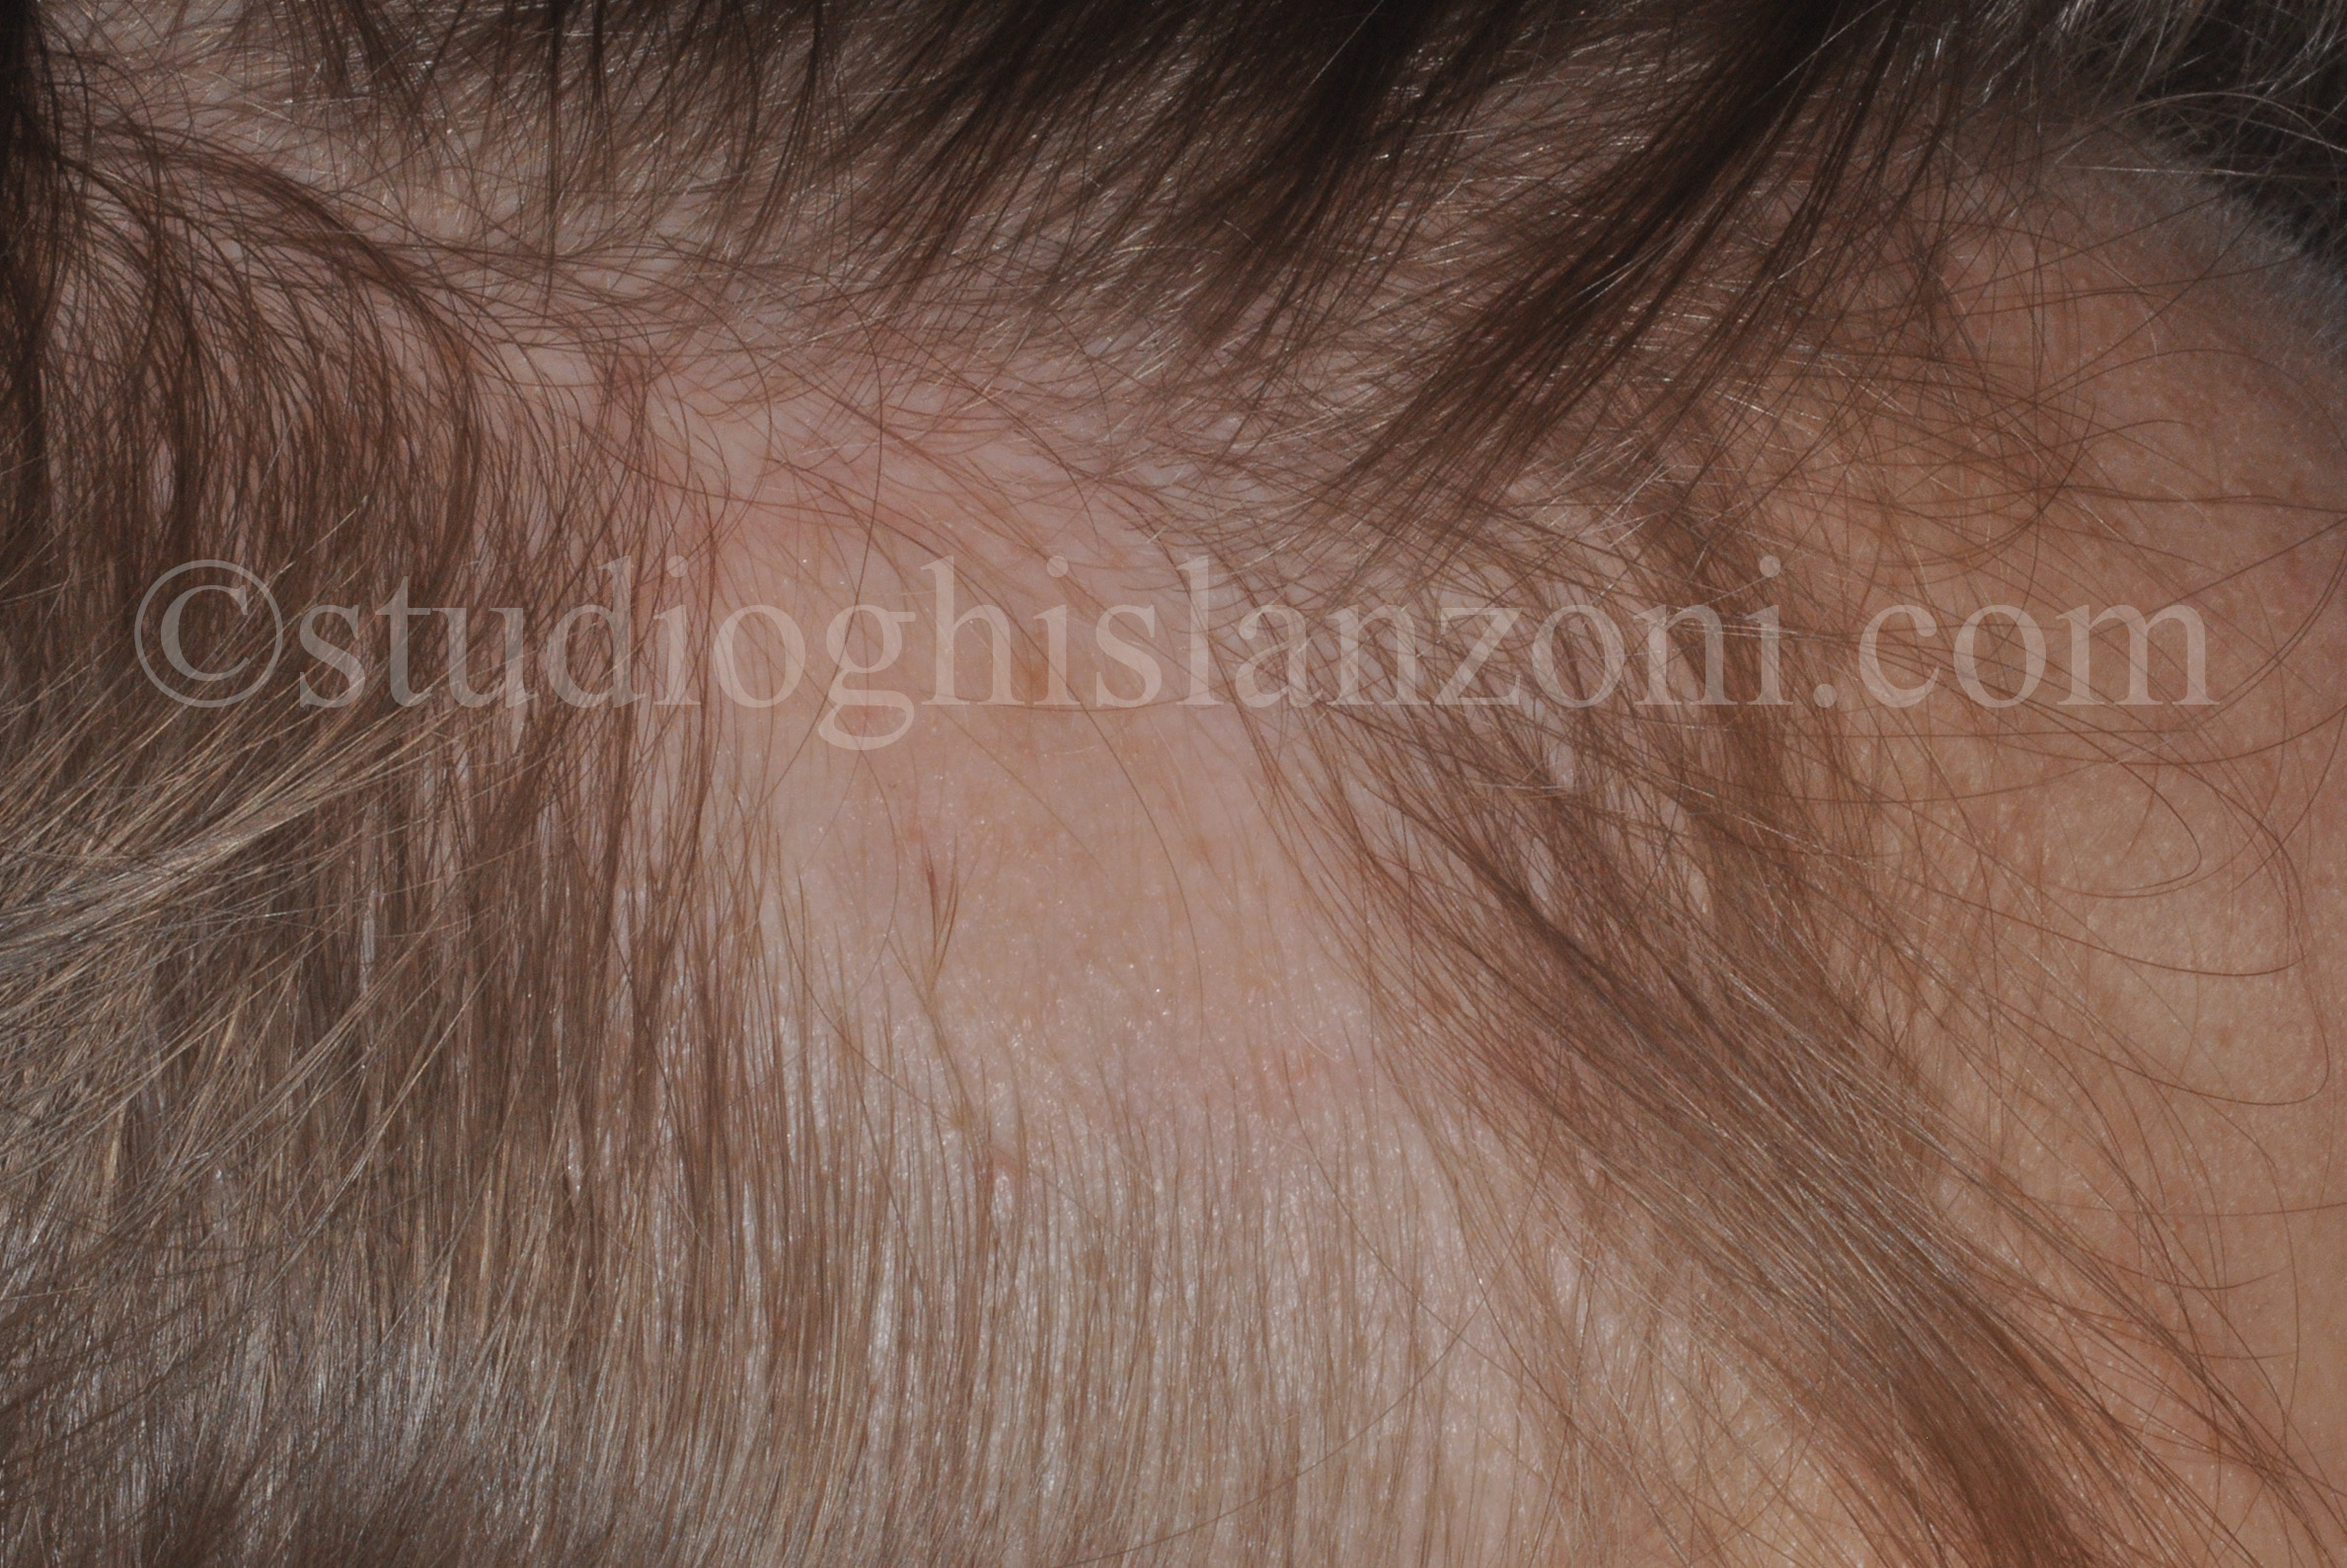 Alopecia-triangolare-congenita.jpg